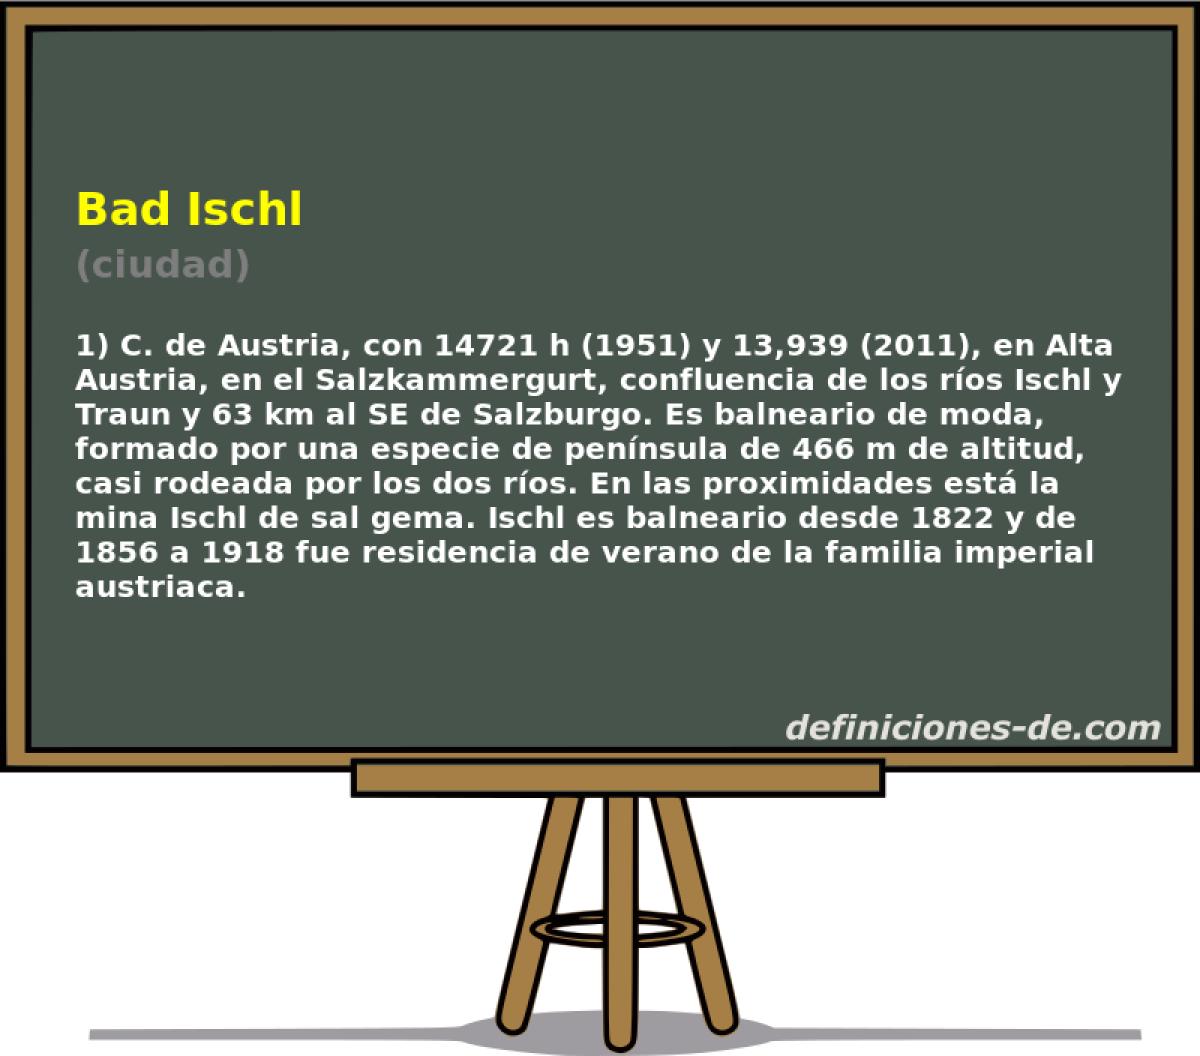 Bad Ischl (ciudad)